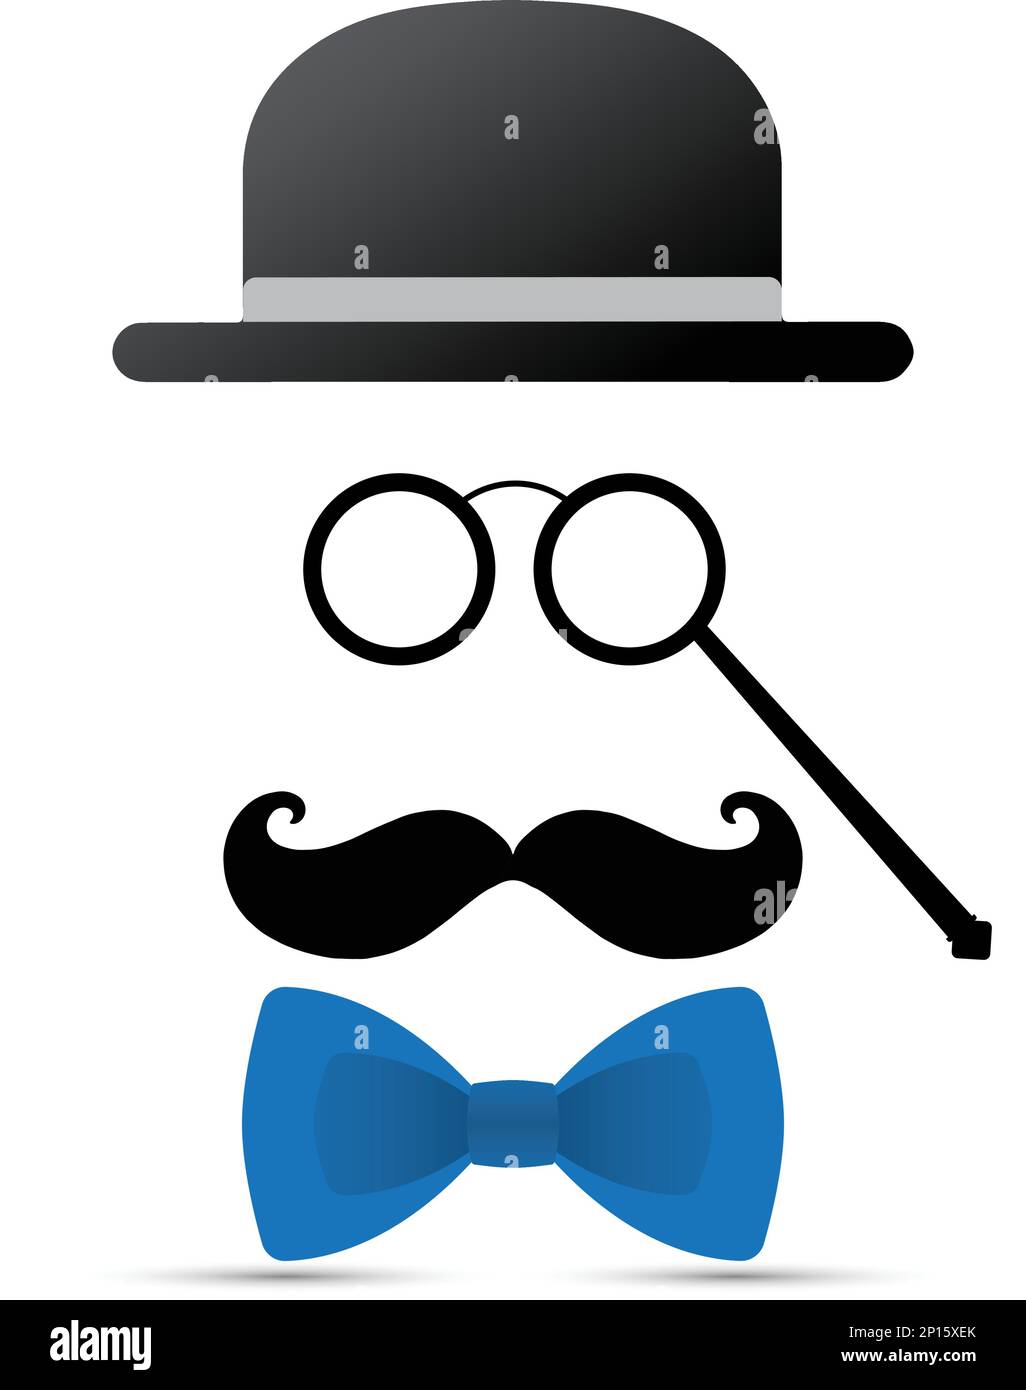 Schwarzer Schnurrbart, Lorgnette, Hut und blaue Fliege auf weißem Hintergrund Stock Vektor